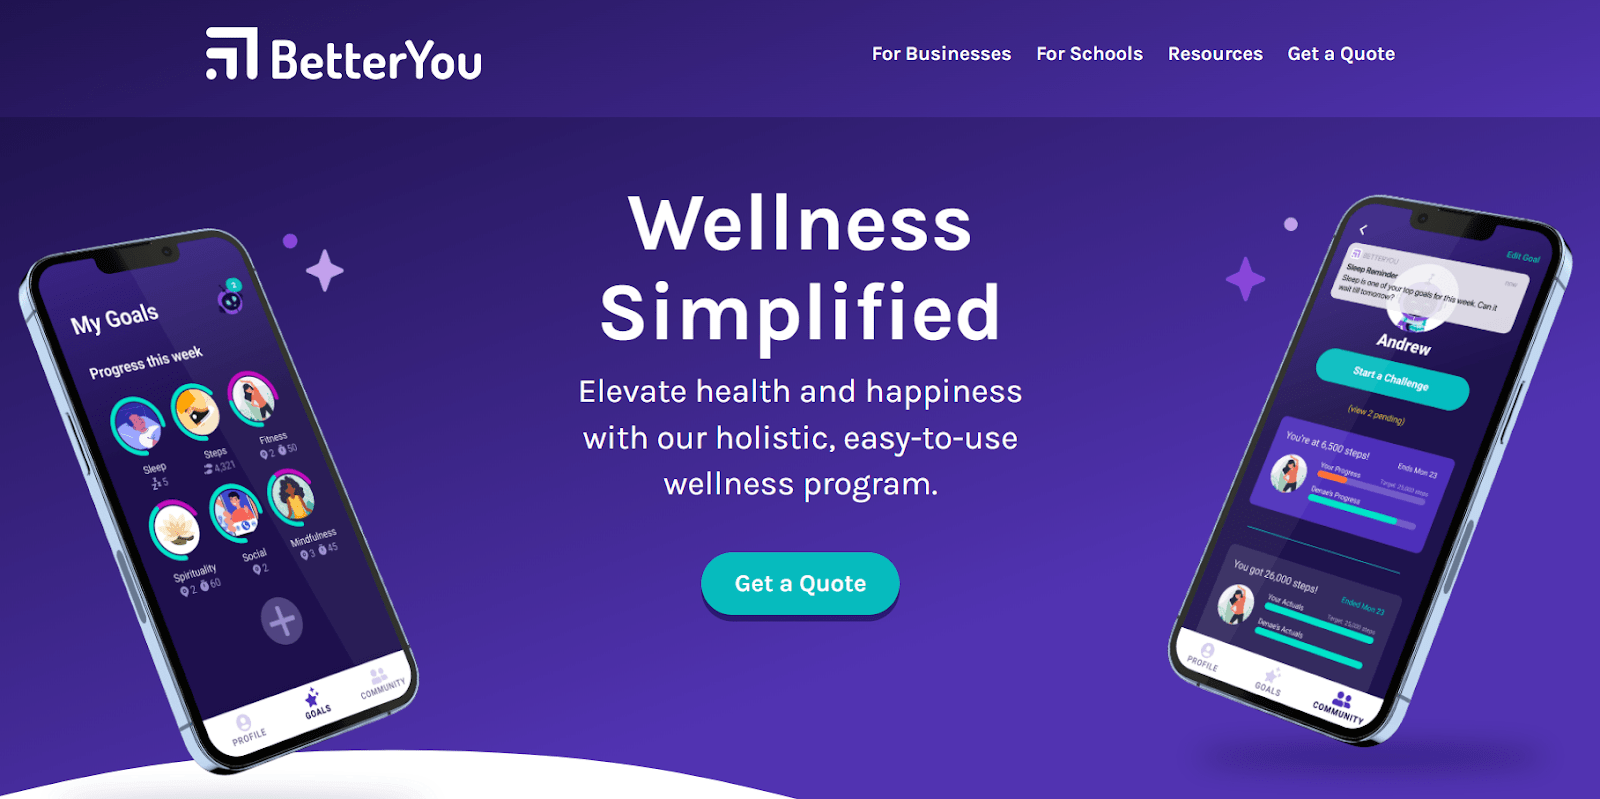 BetterYou Website - Wellness Simplified